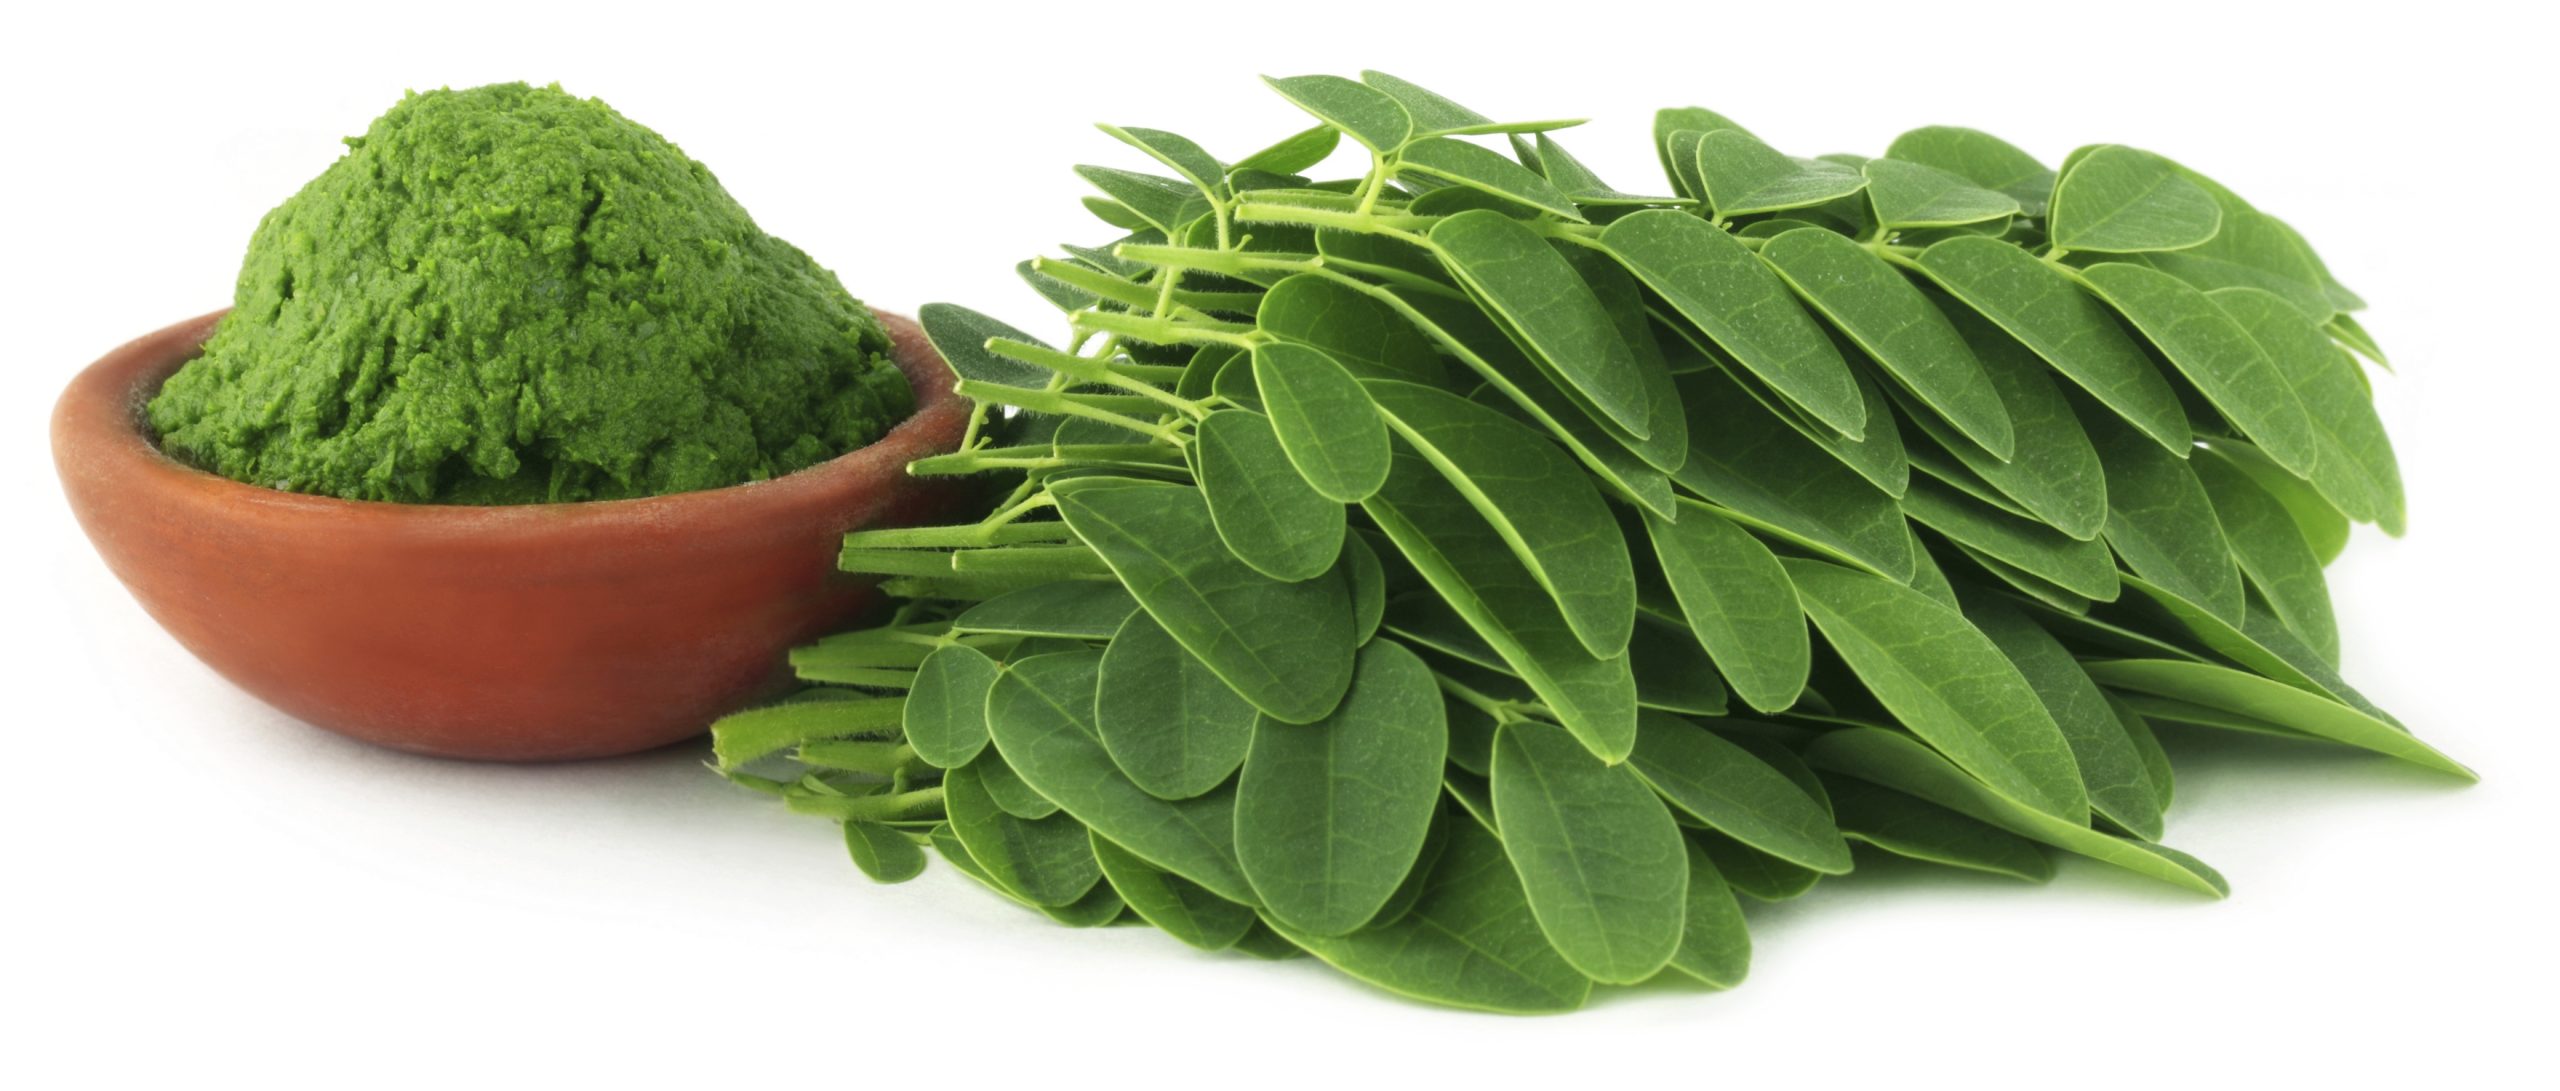 فوائد نبات المورينجا ” moringa “